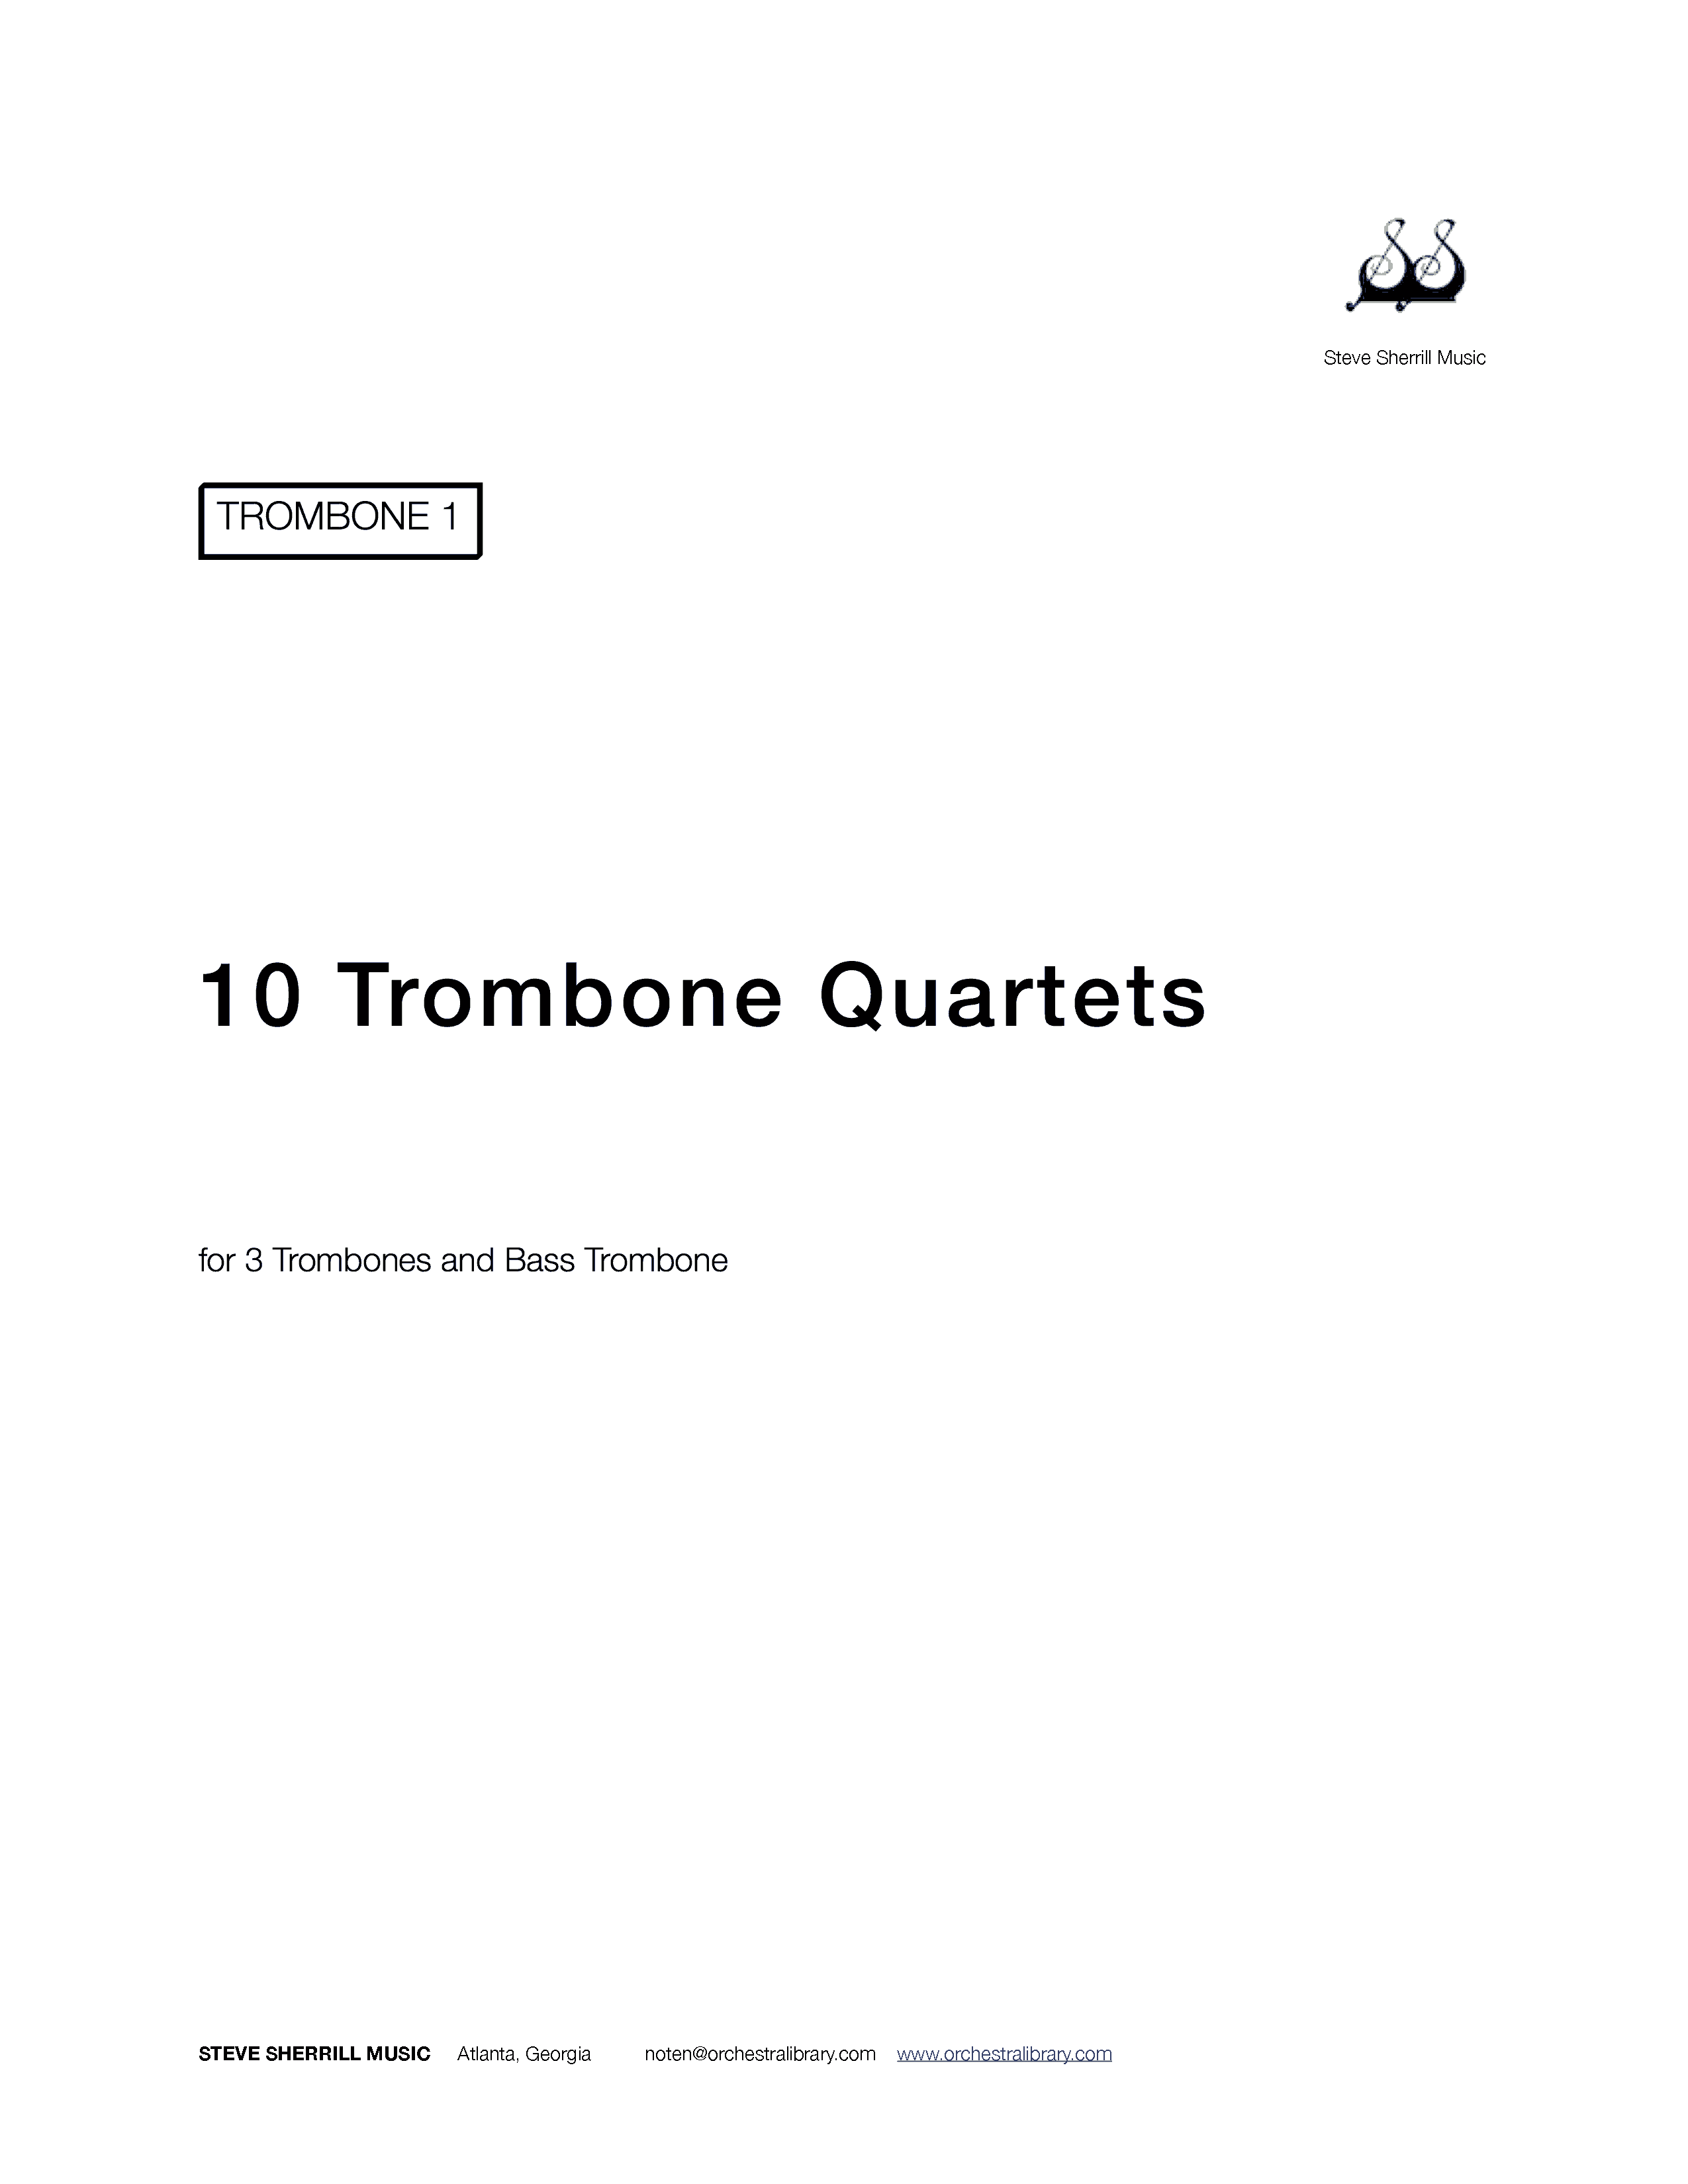 Ten Trombone Quartets  cover page